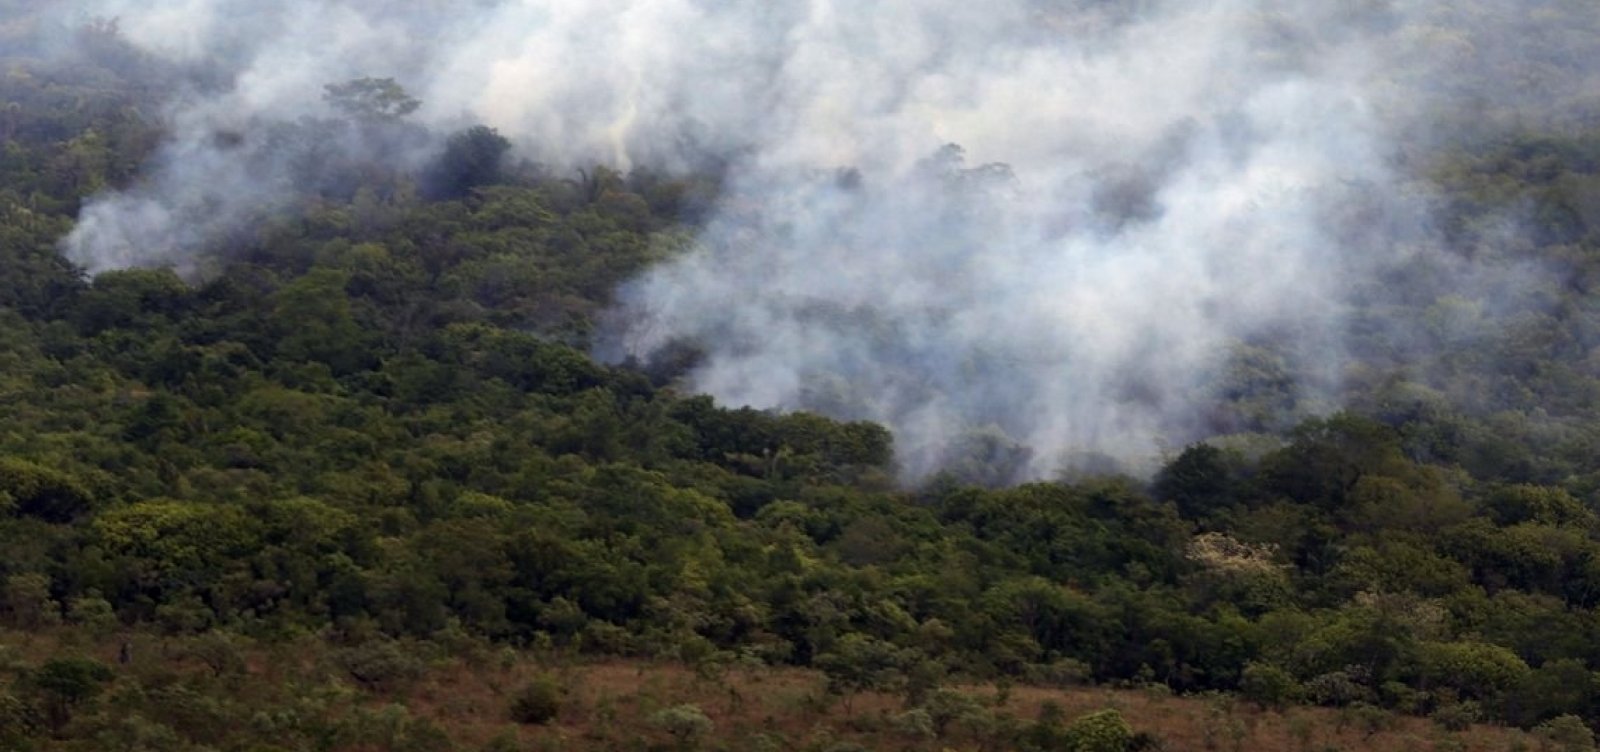 Autuações por crimes como queimadas e desmatamento caem 23% na Amazônia Legal